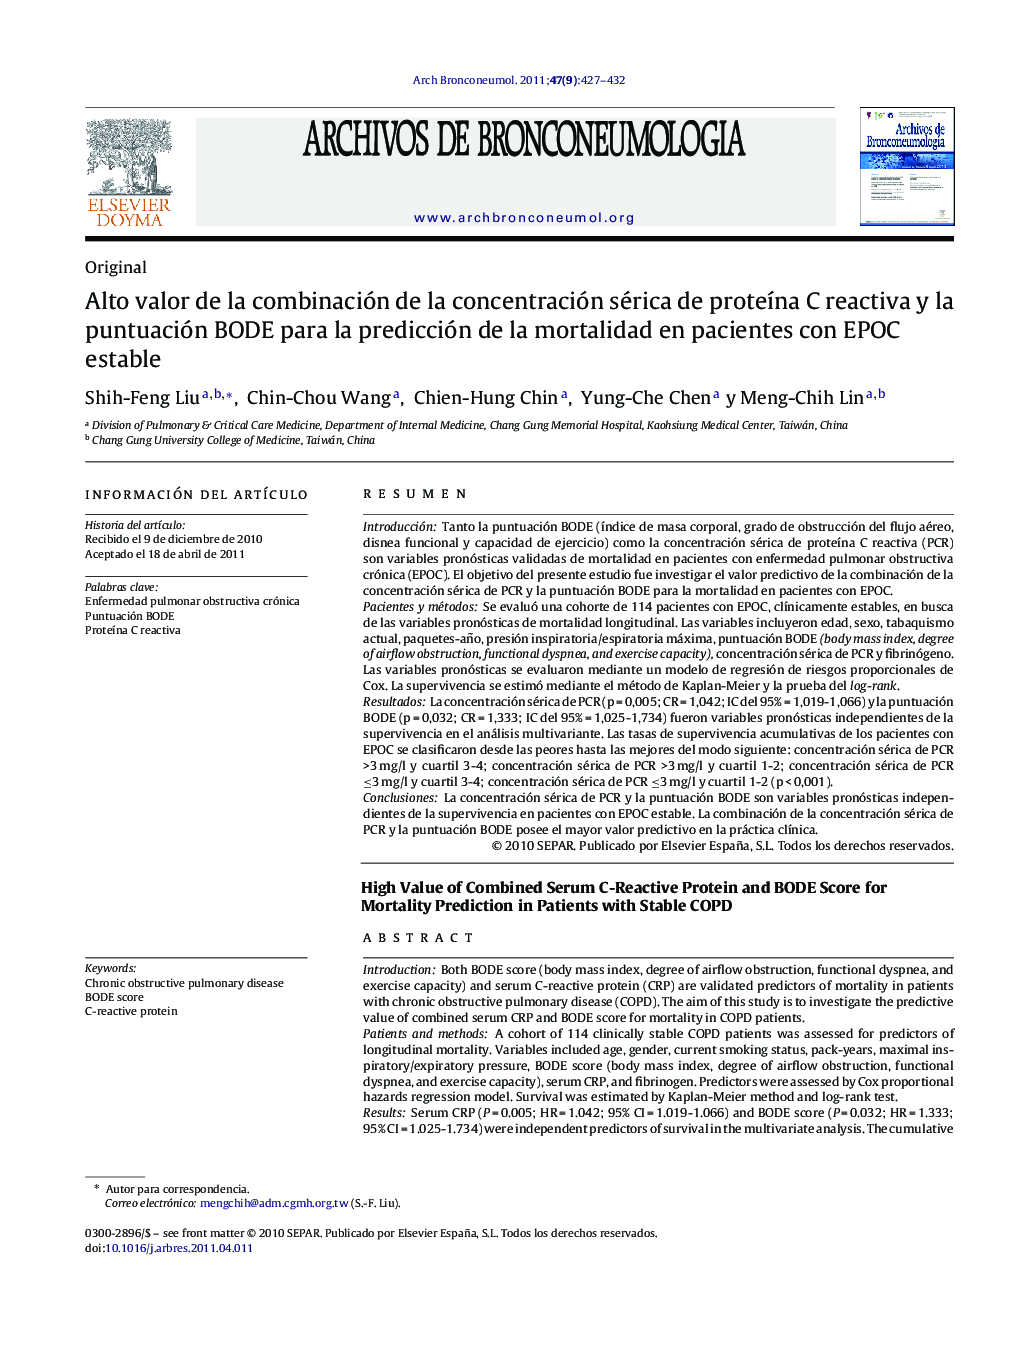 Alto valor de la combinación de la concentración sérica de proteÃ­na C reactiva y la puntuación BODE para la predicción de la mortalidad en pacientes con EPOC estable